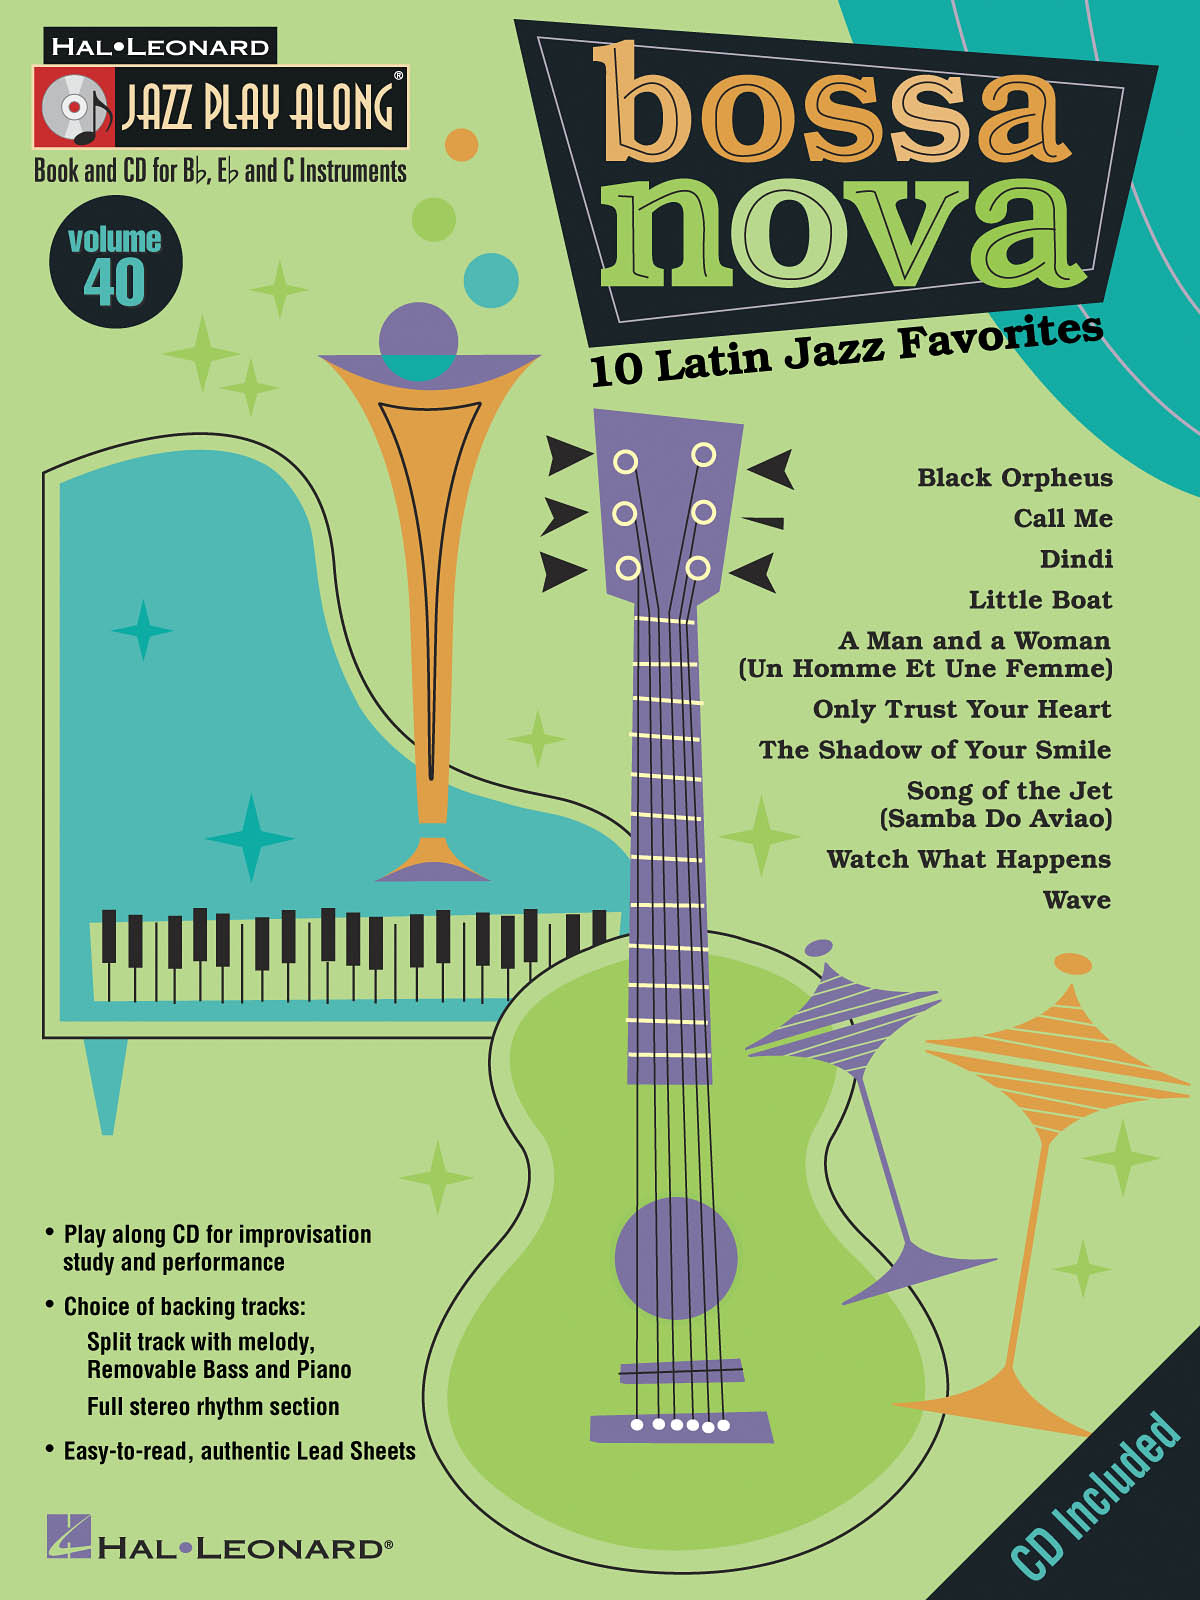 Bossa Nova - 10 Latin Jazz Favorites - Jazz Play-Along Volume 40 - noty pro nástroje v ladění C